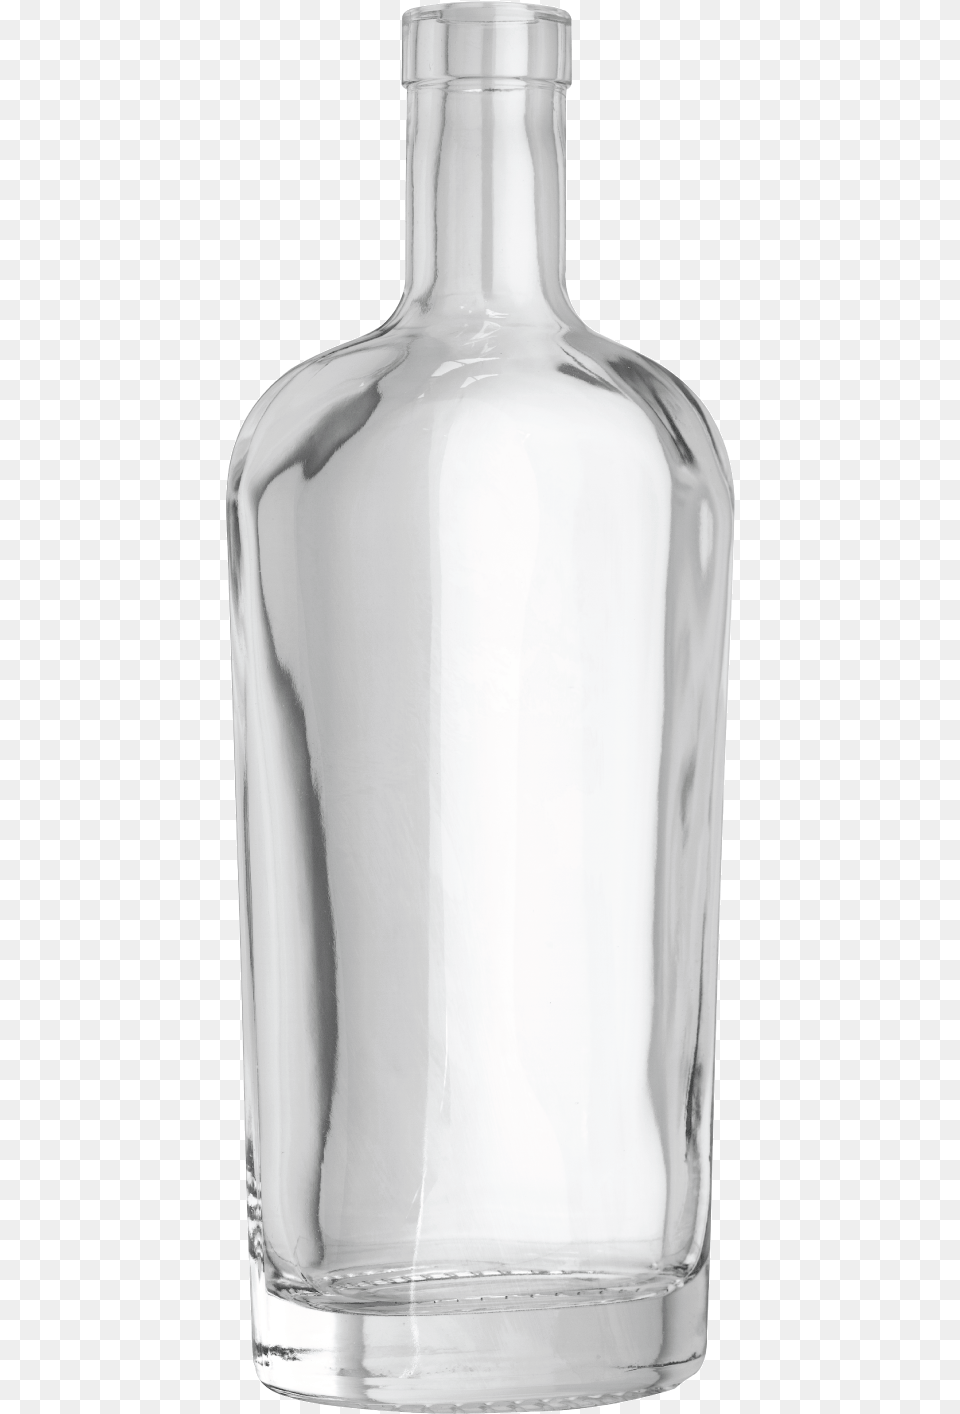 Flask, Glass, Jar, Pottery, Vase Free Transparent Png